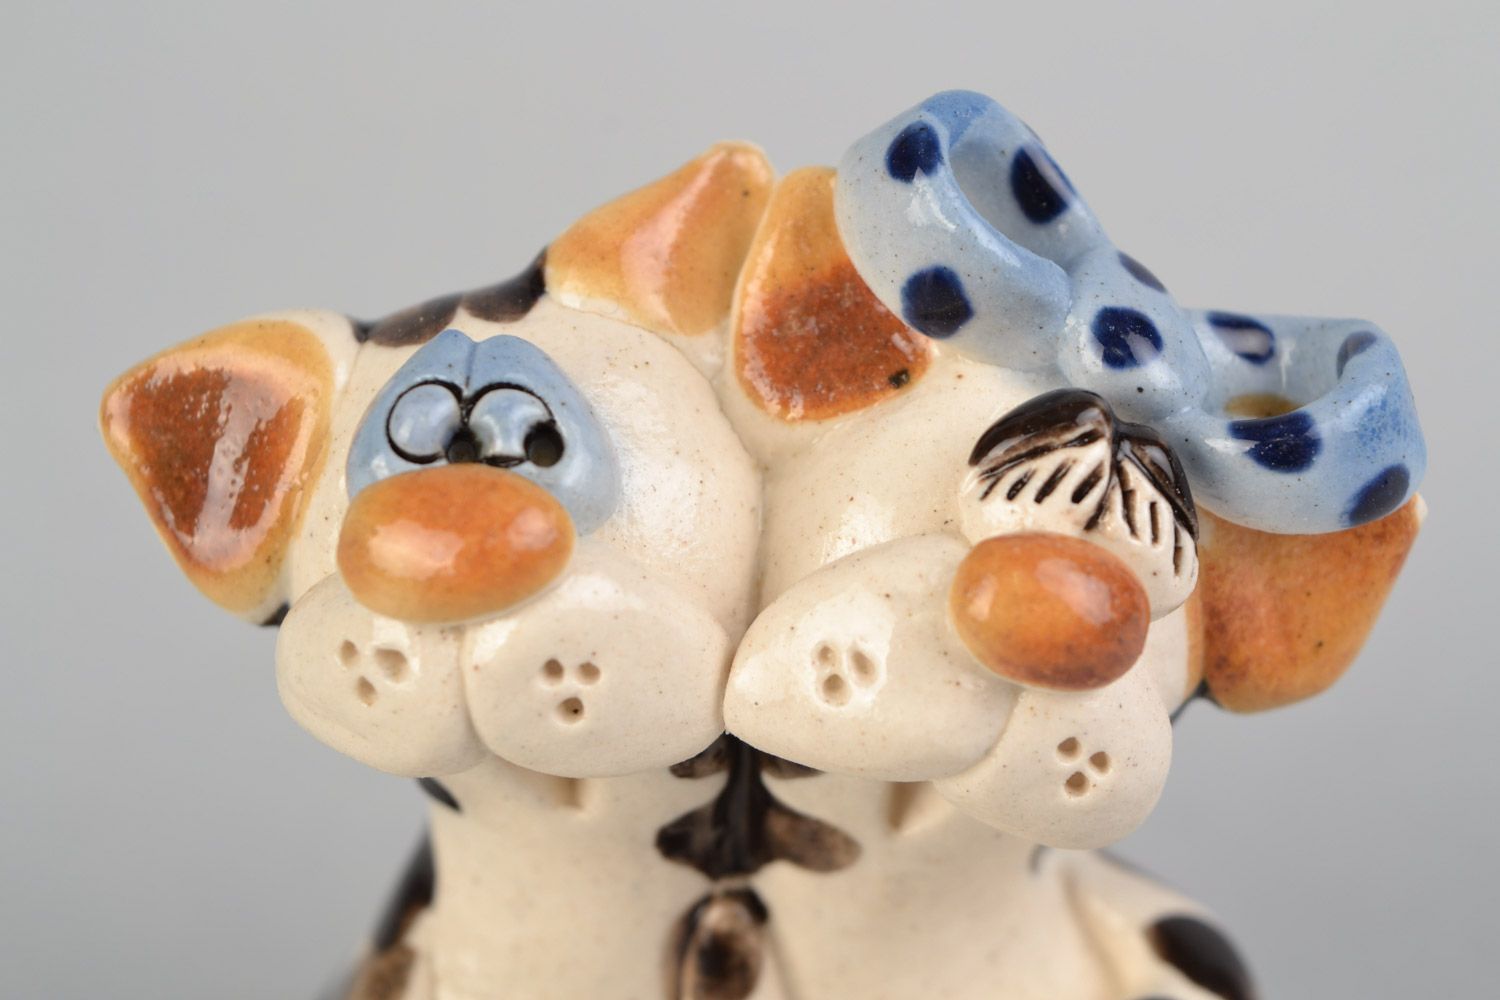 Авторская расписанная глазурью глиняная фигурка котов обнимающихся ручной работы фото 4